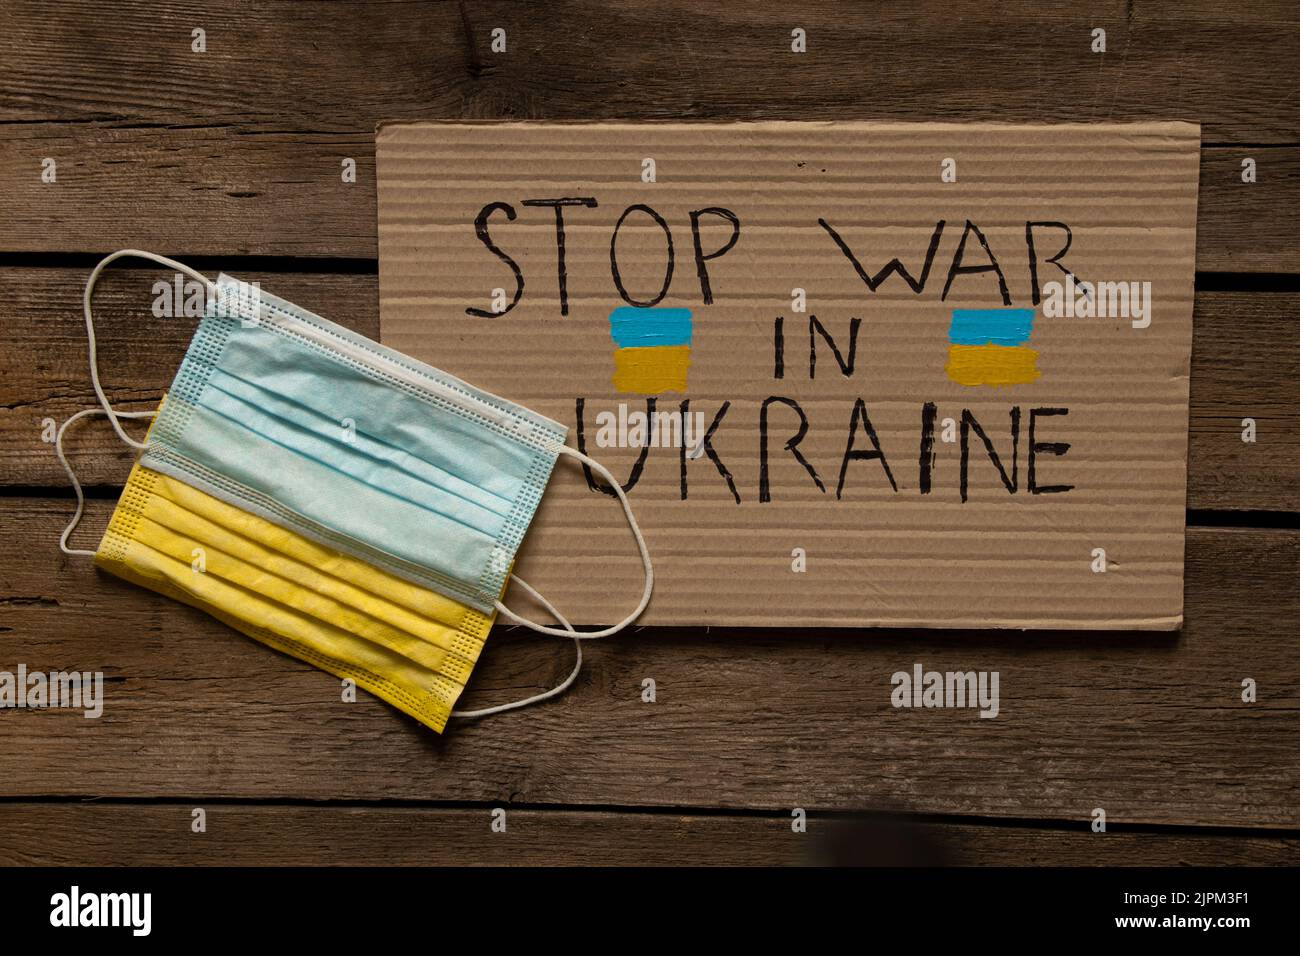 Maschere mediche, giallo e blu, come la bandiera dell'Ucraina, giacciono su un tavolo di legno e un segno con il testo fermare la guerra in Ucraina. Bandiera dello Stato di Ukrain Foto Stock